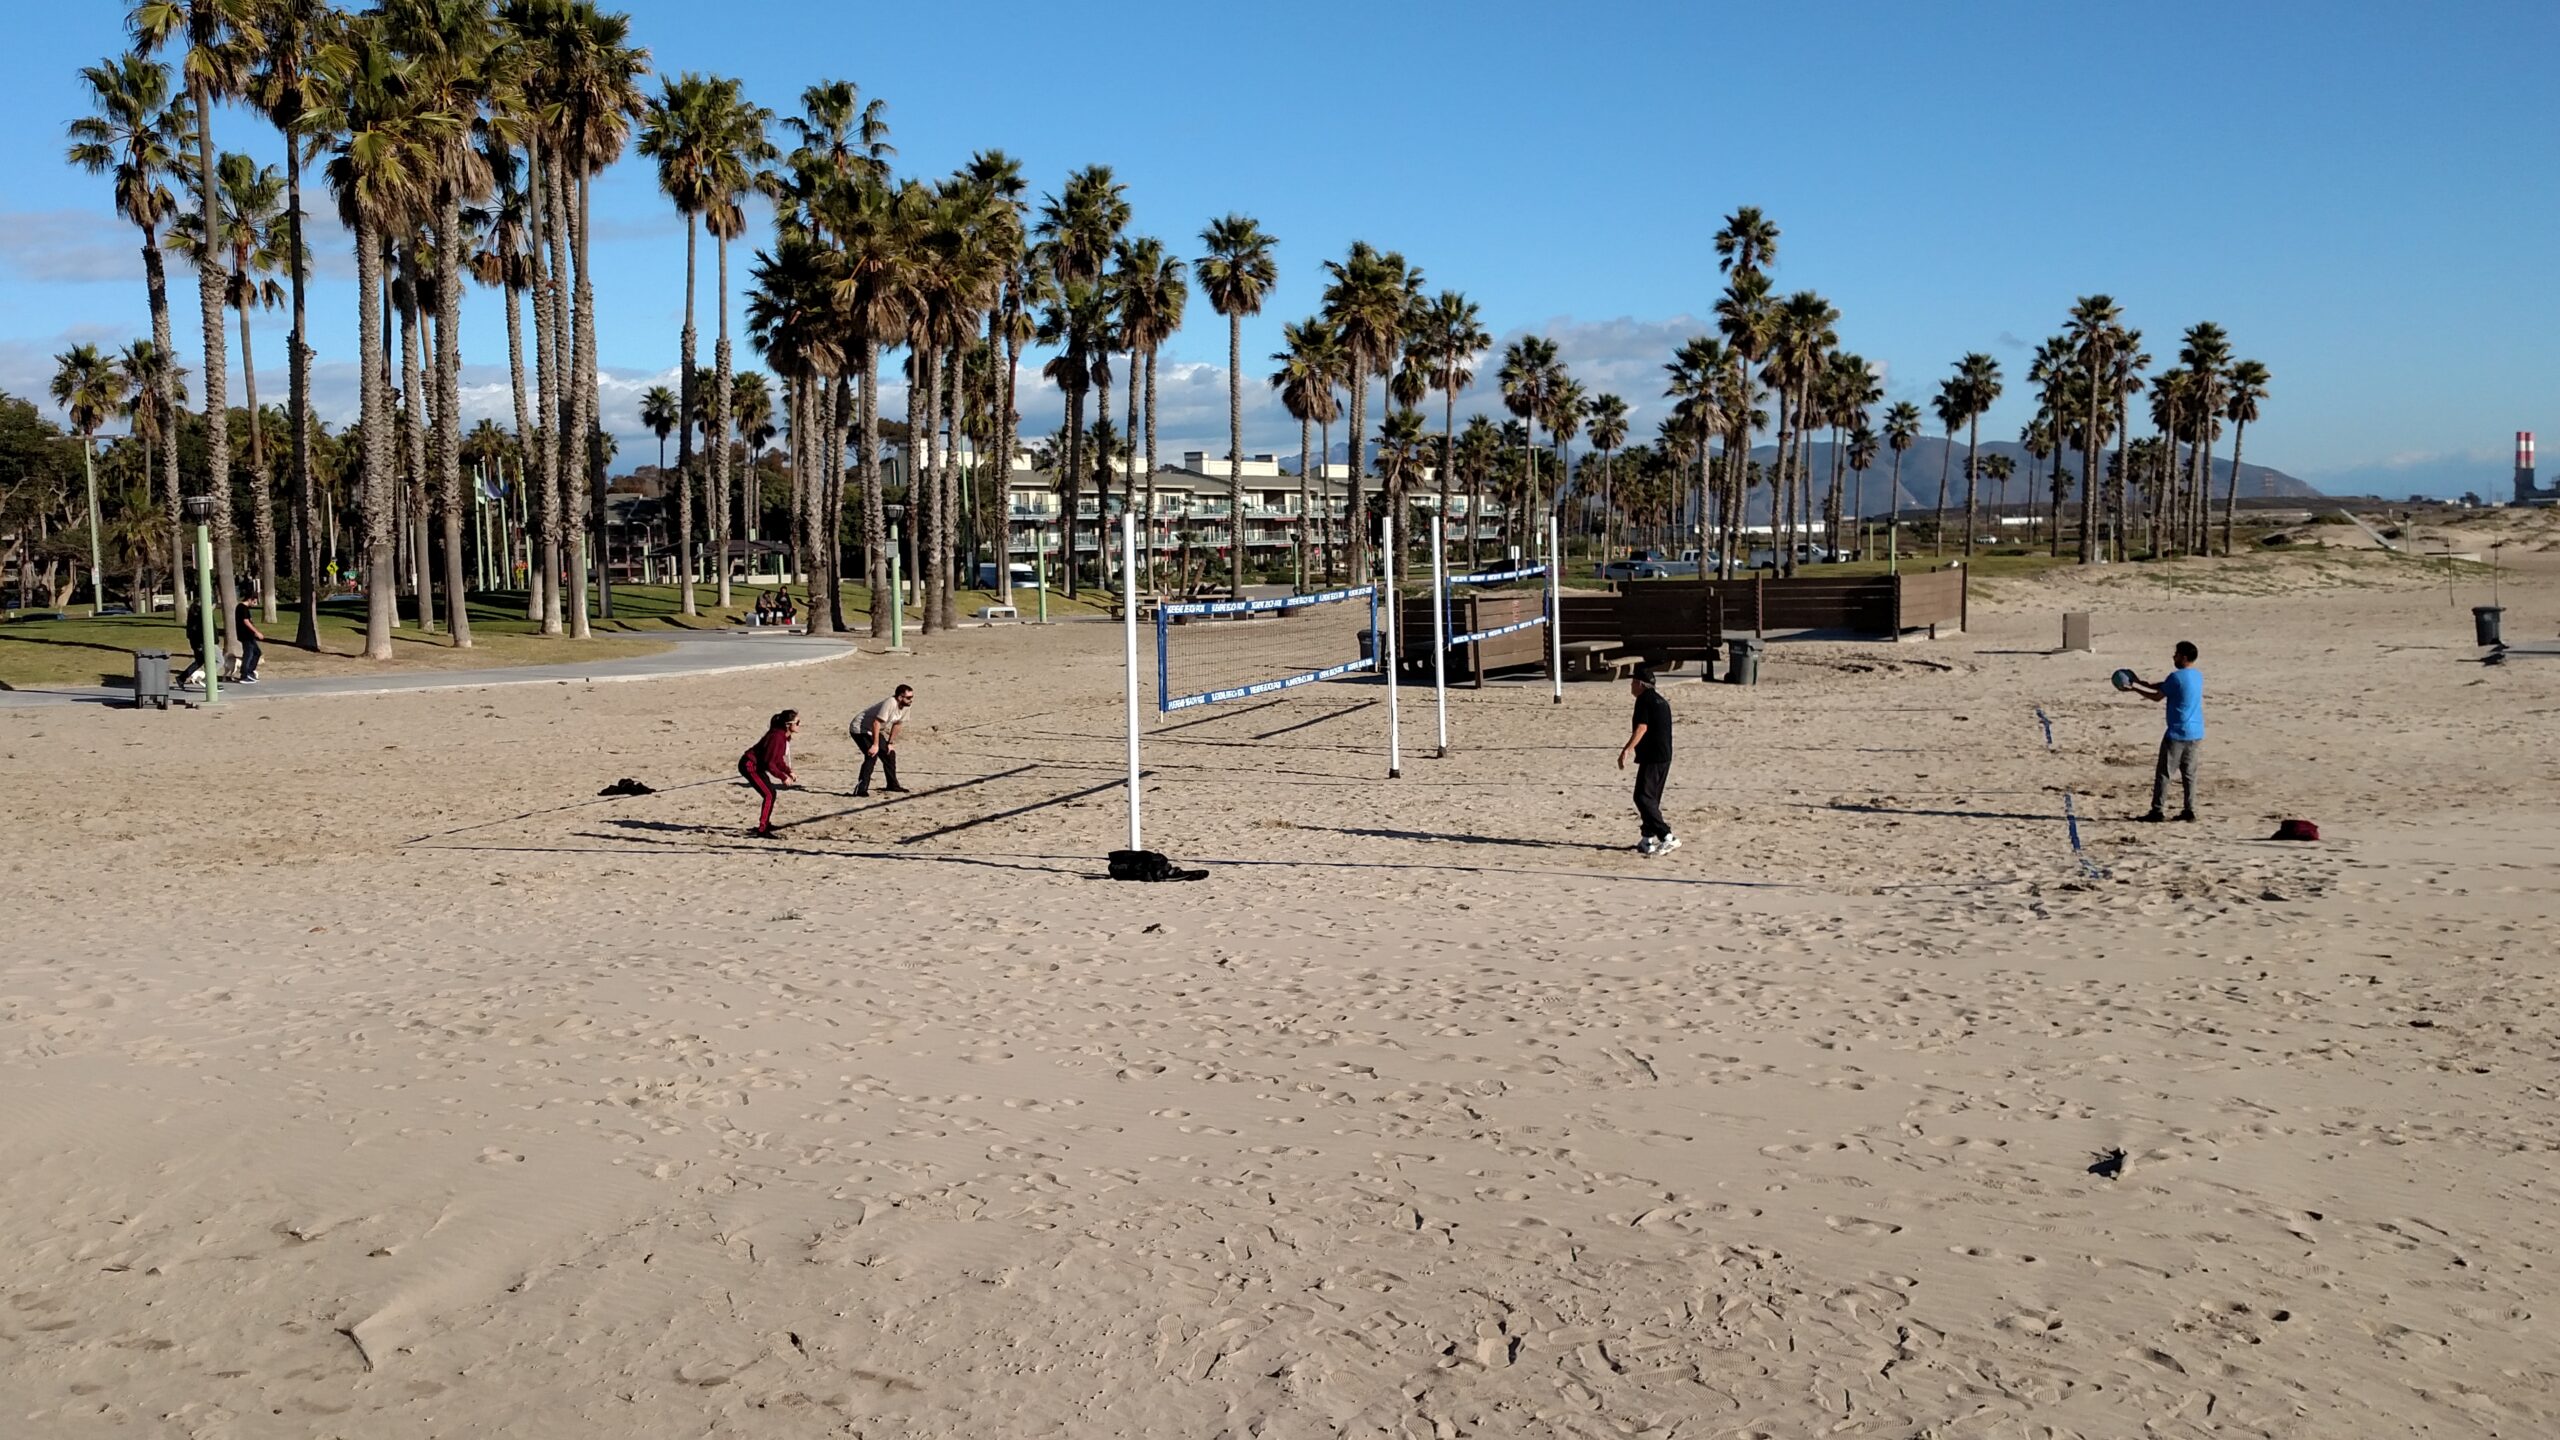 PT. Hueneme beach courts